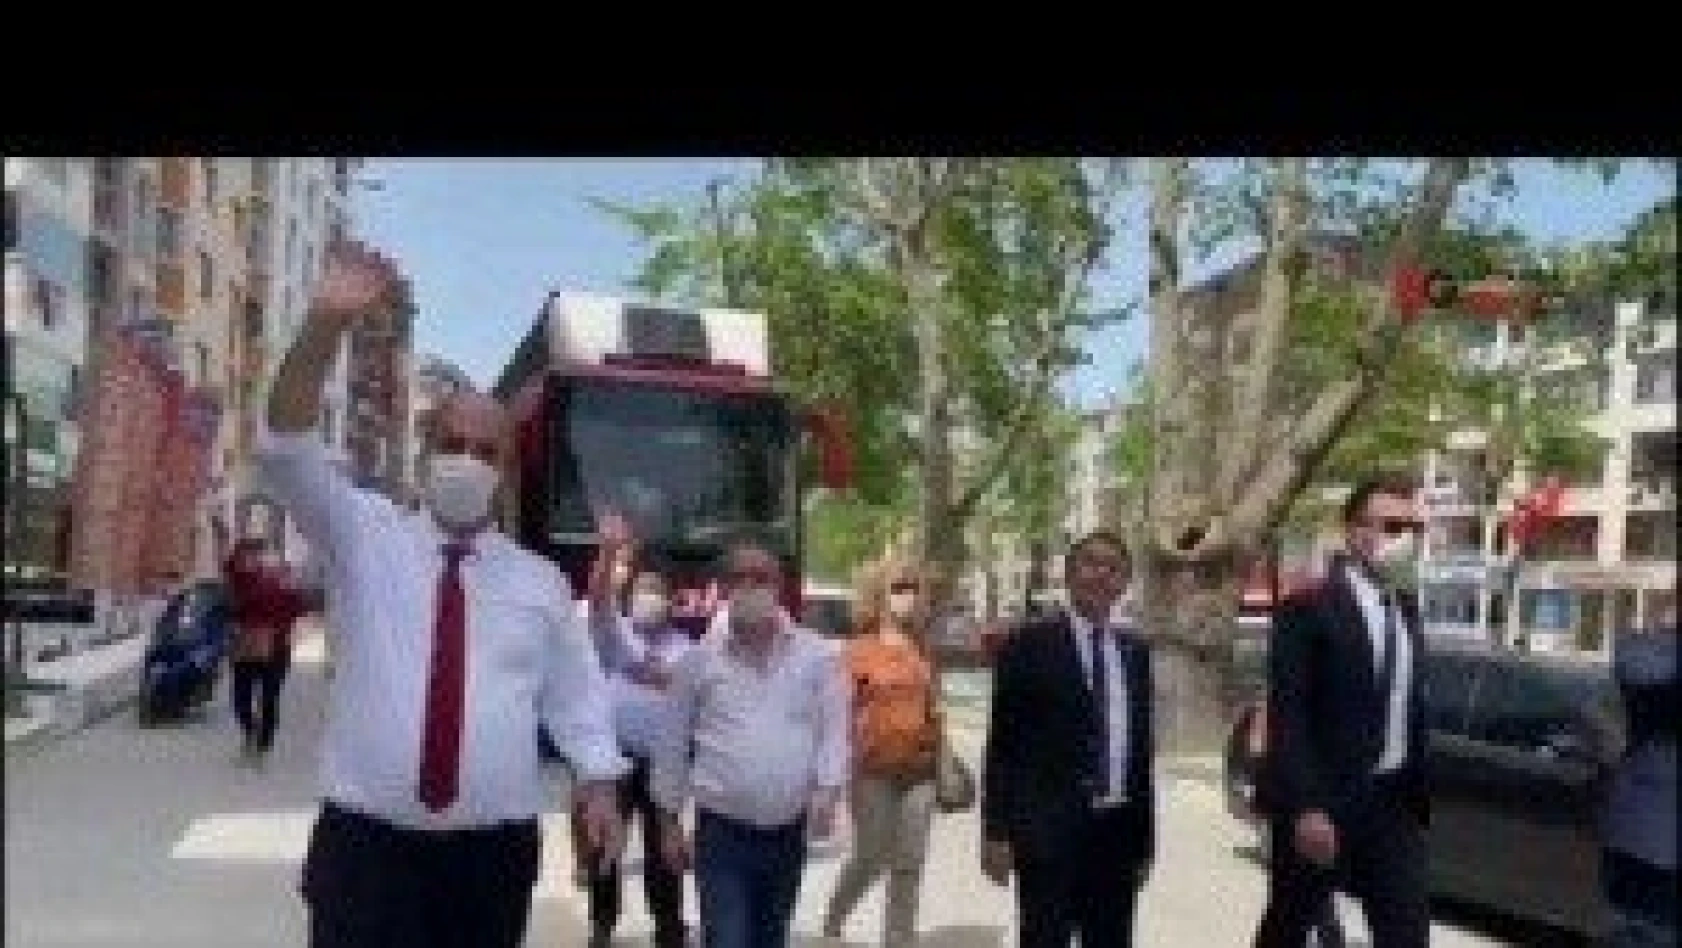 CHP İl Başkanlığı, 19 Mayıs'ı farklı formatta kutladı